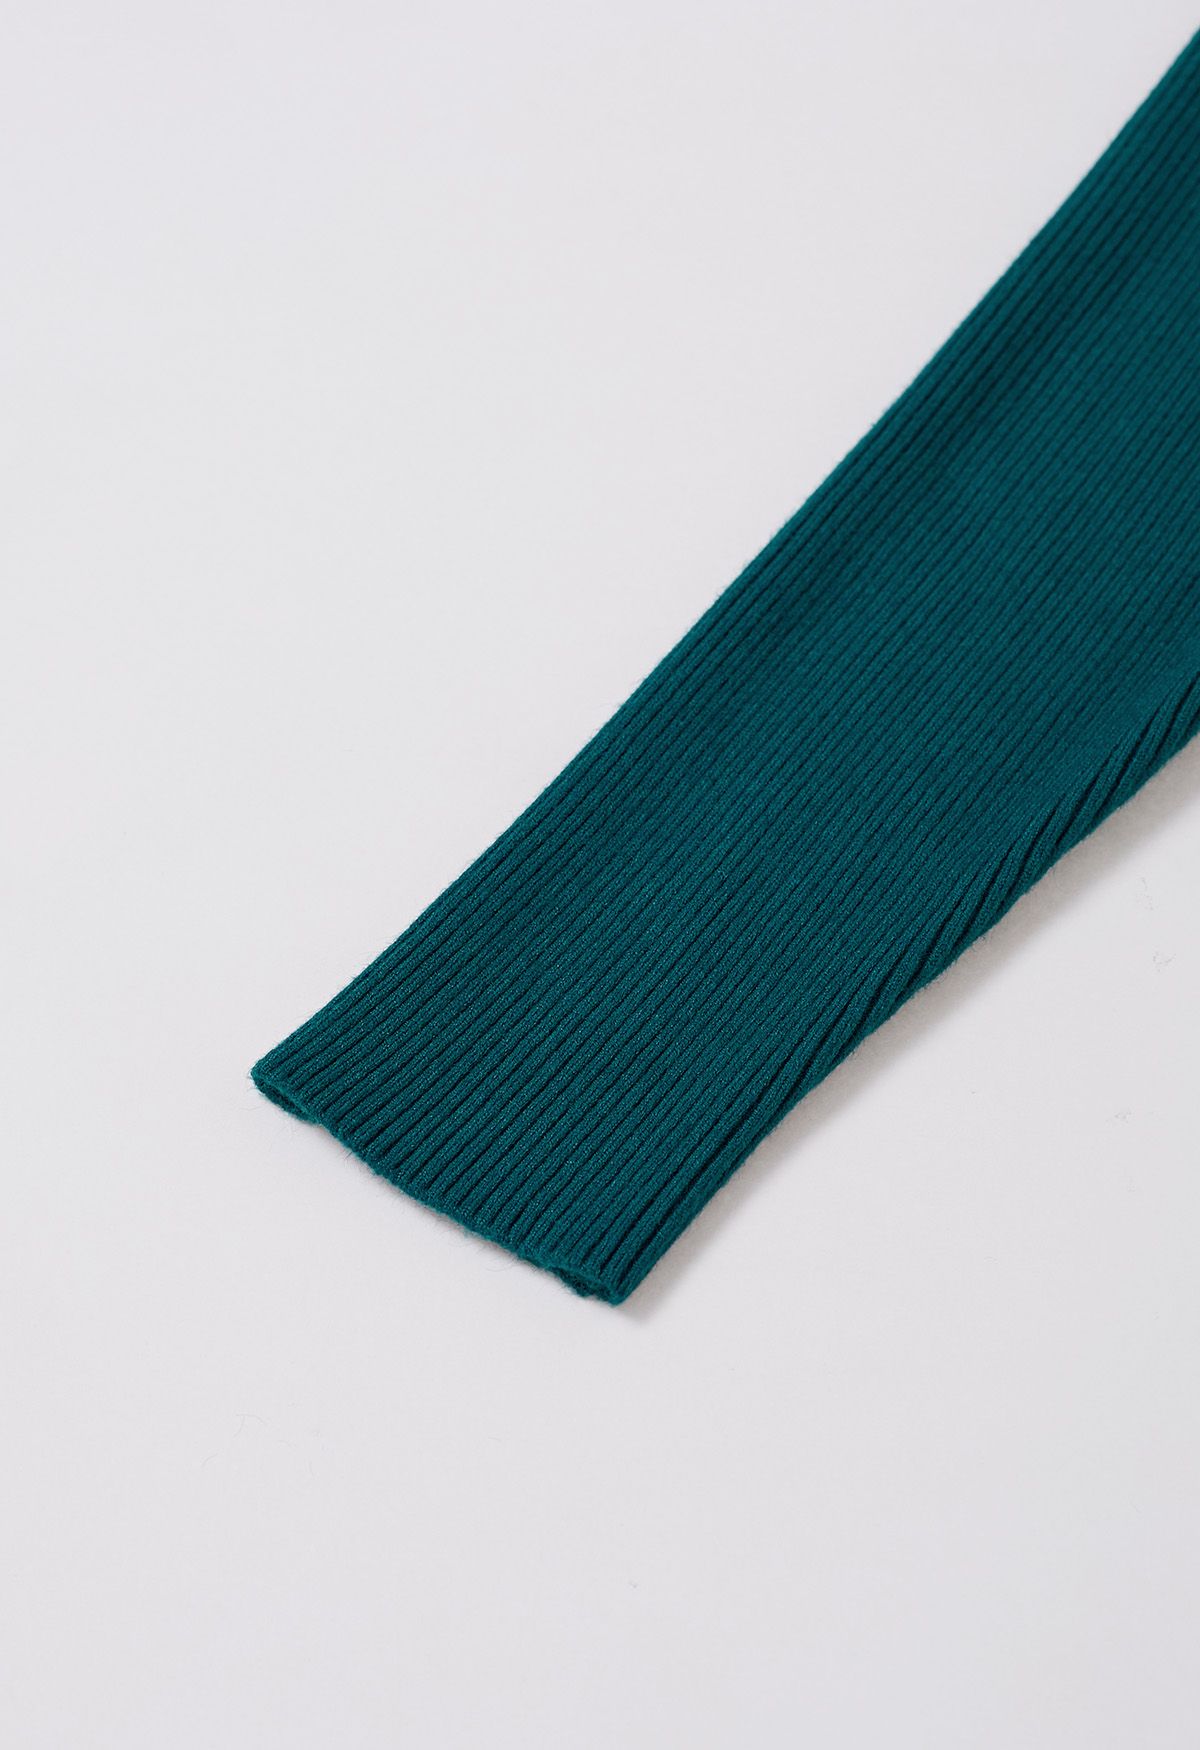 Conjunto de top camisola con ribete de plumas y manga de suéter en verde azulado